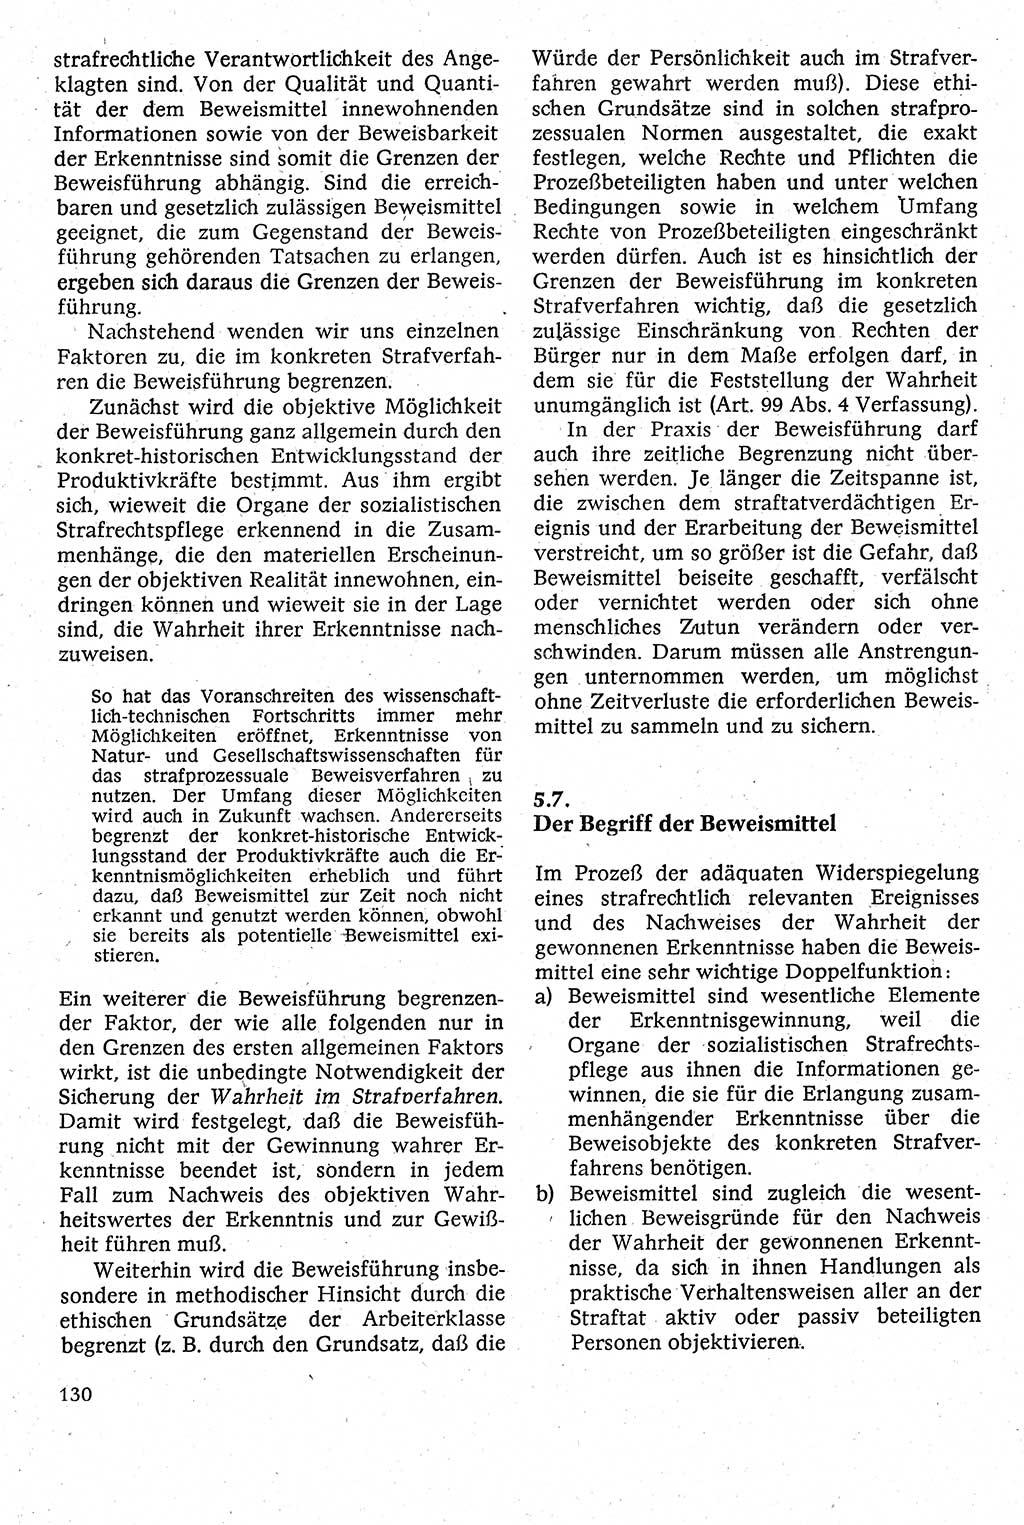 Strafverfahrensrecht [Deutsche Demokratische Republik (DDR)], Lehrbuch 1982, Seite 130 (Strafverf.-R. DDR Lb. 1982, S. 130)